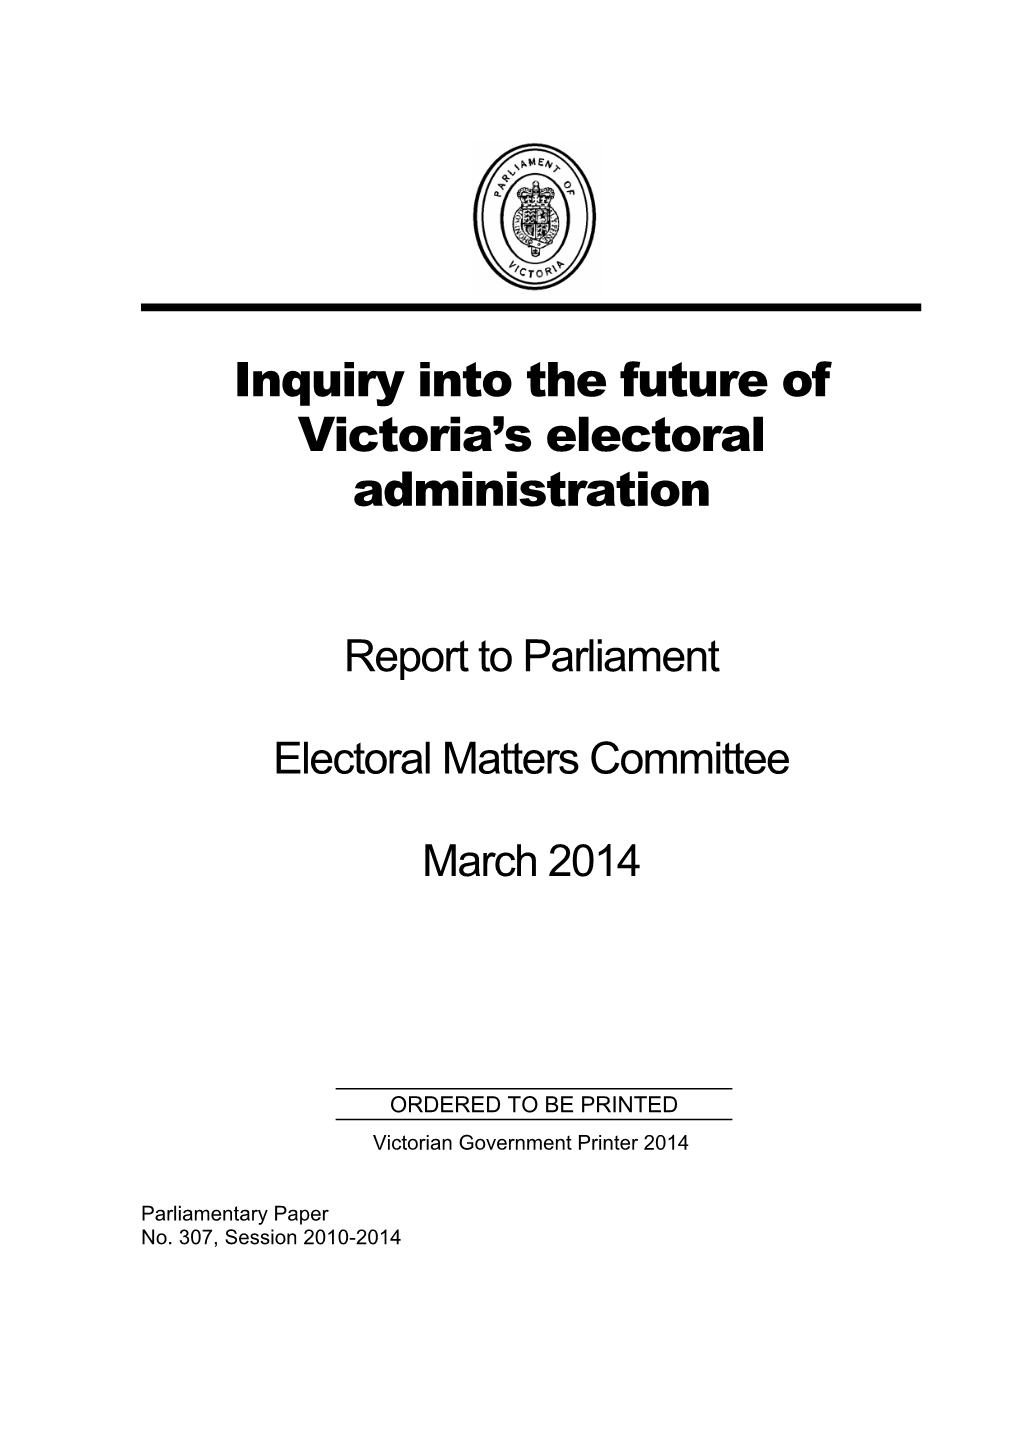 Inquiry Into the Future of Victoria's Electoral Administration